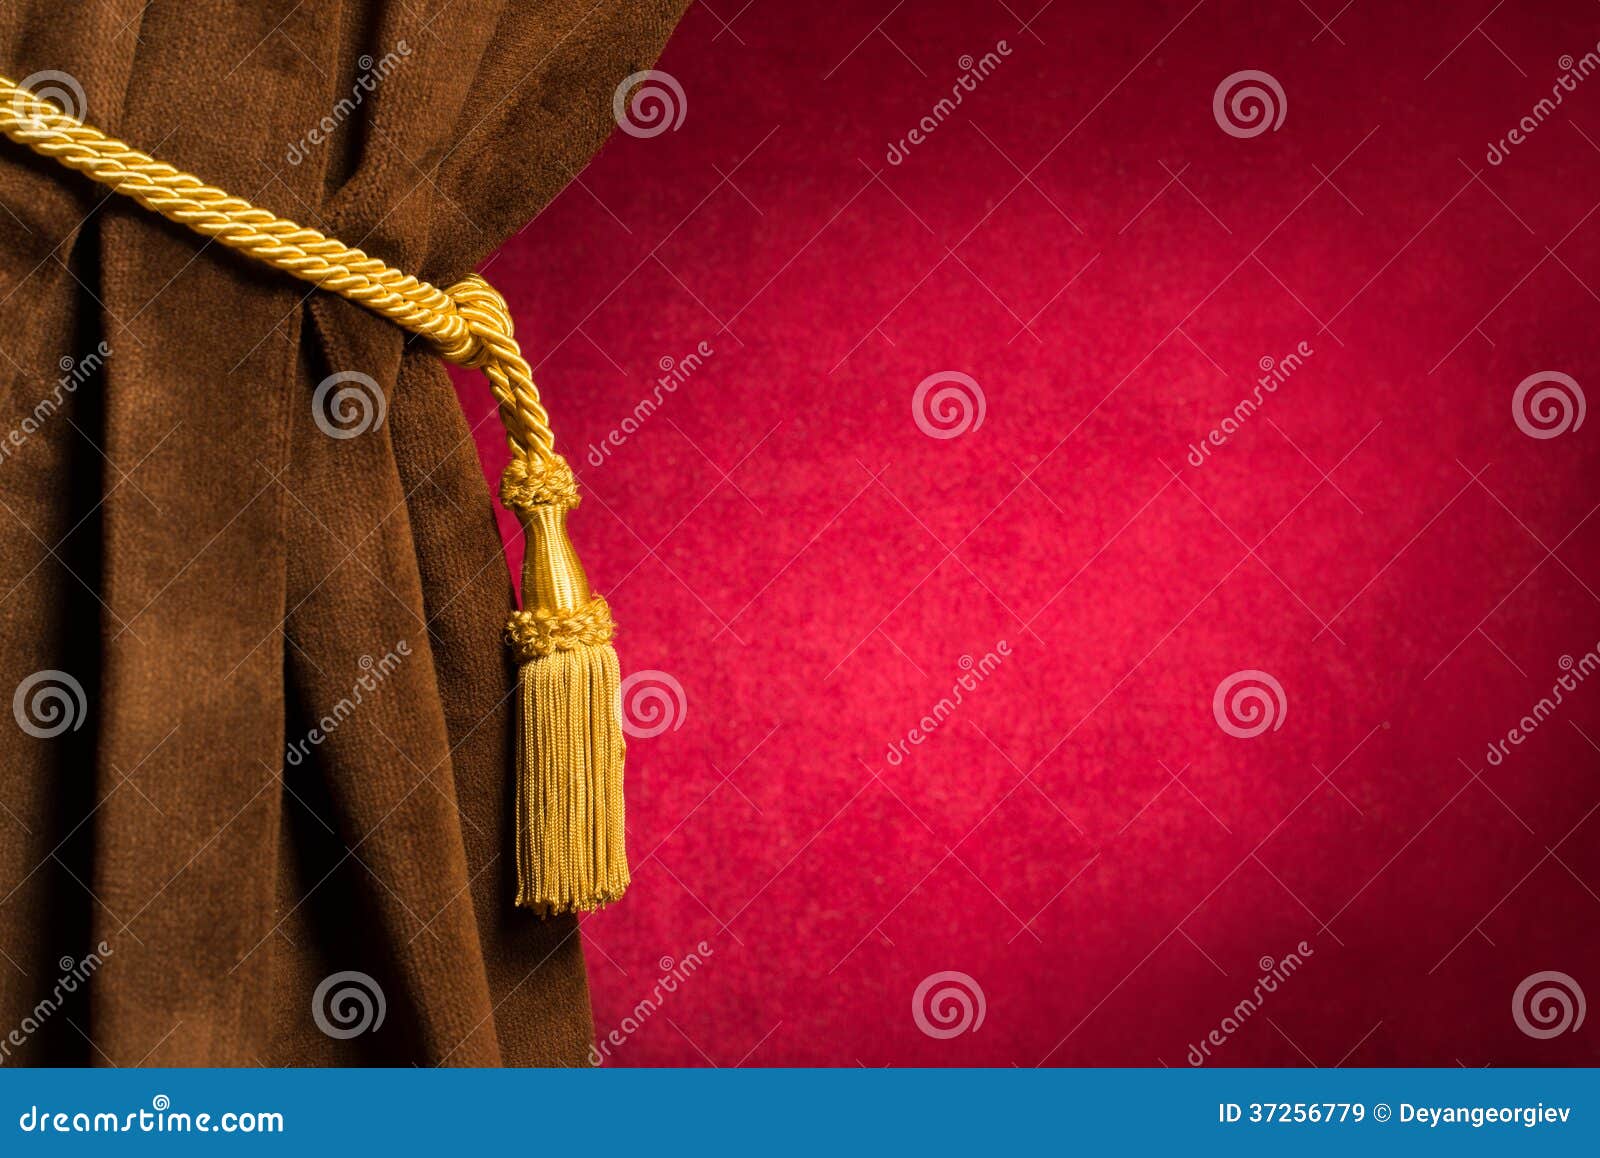 Roten Vorhang Mit Einer Quaste Und Einem Seil Lizenzfreie Fotos